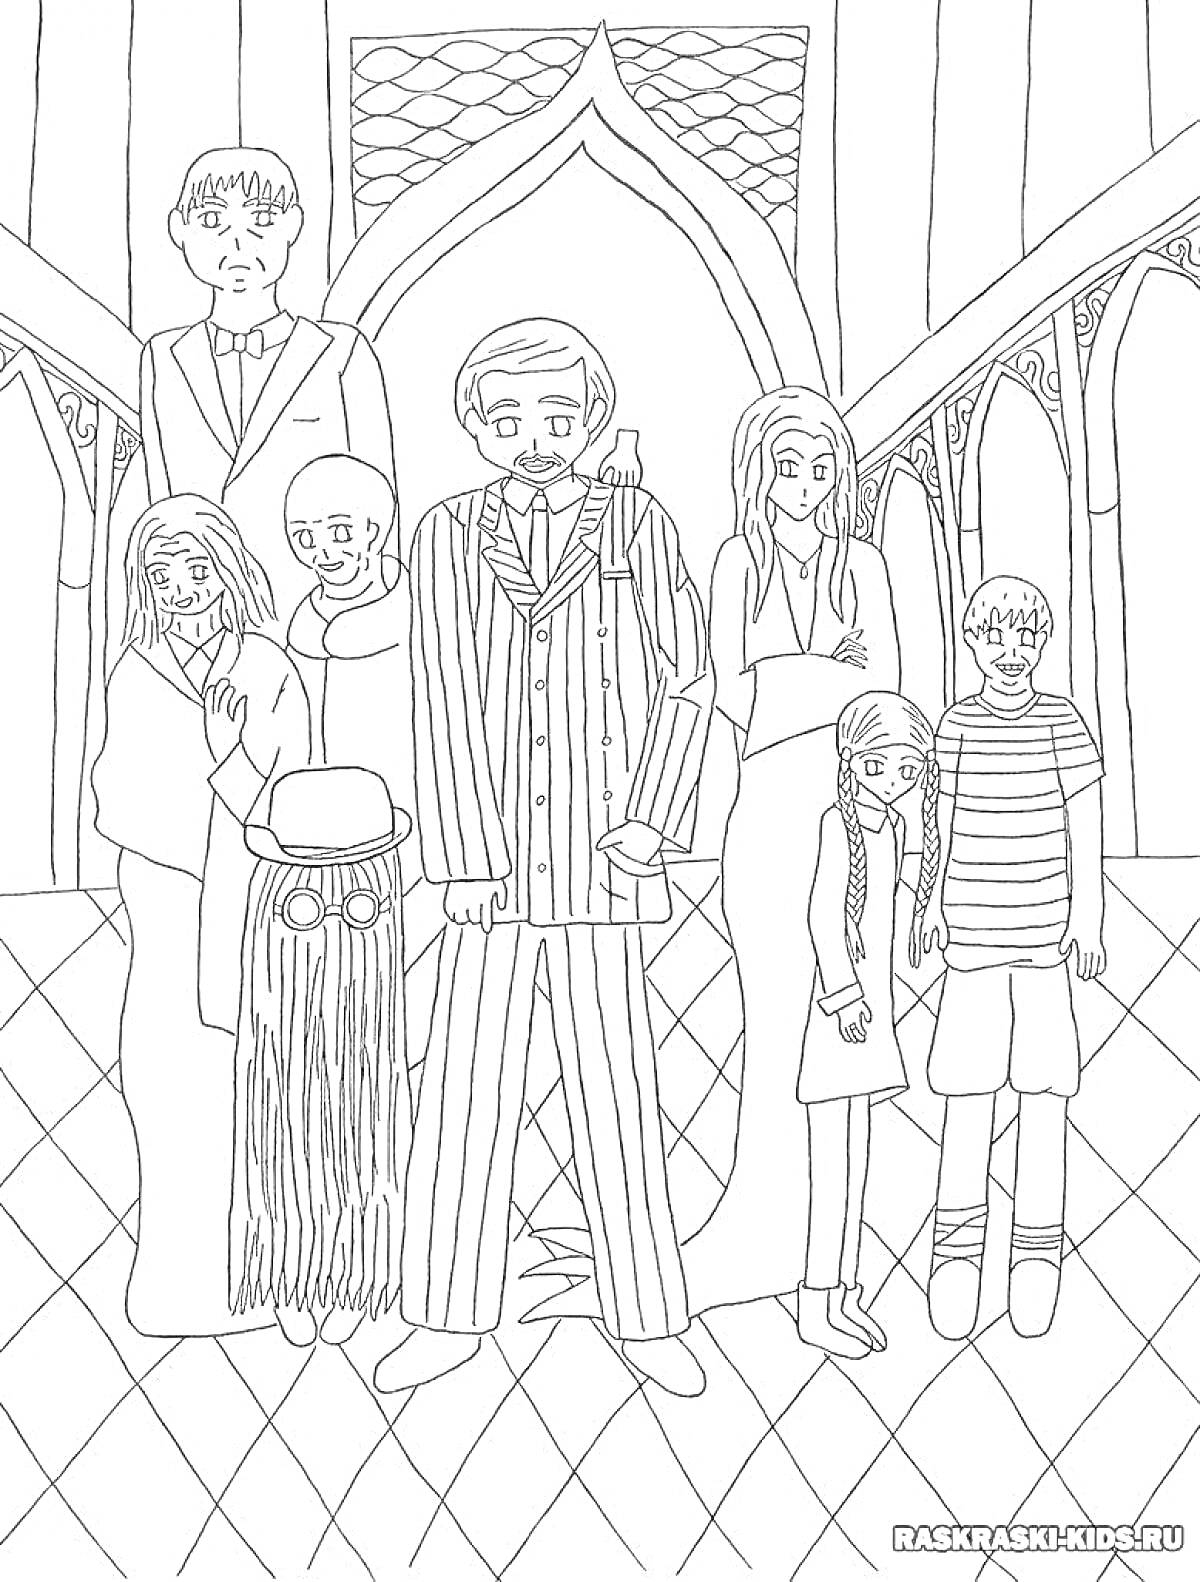 Раскраска Семья в особняке: группа людей, одетых в разные наряды, стоящих на фоне архитектурных элементов внутри здания